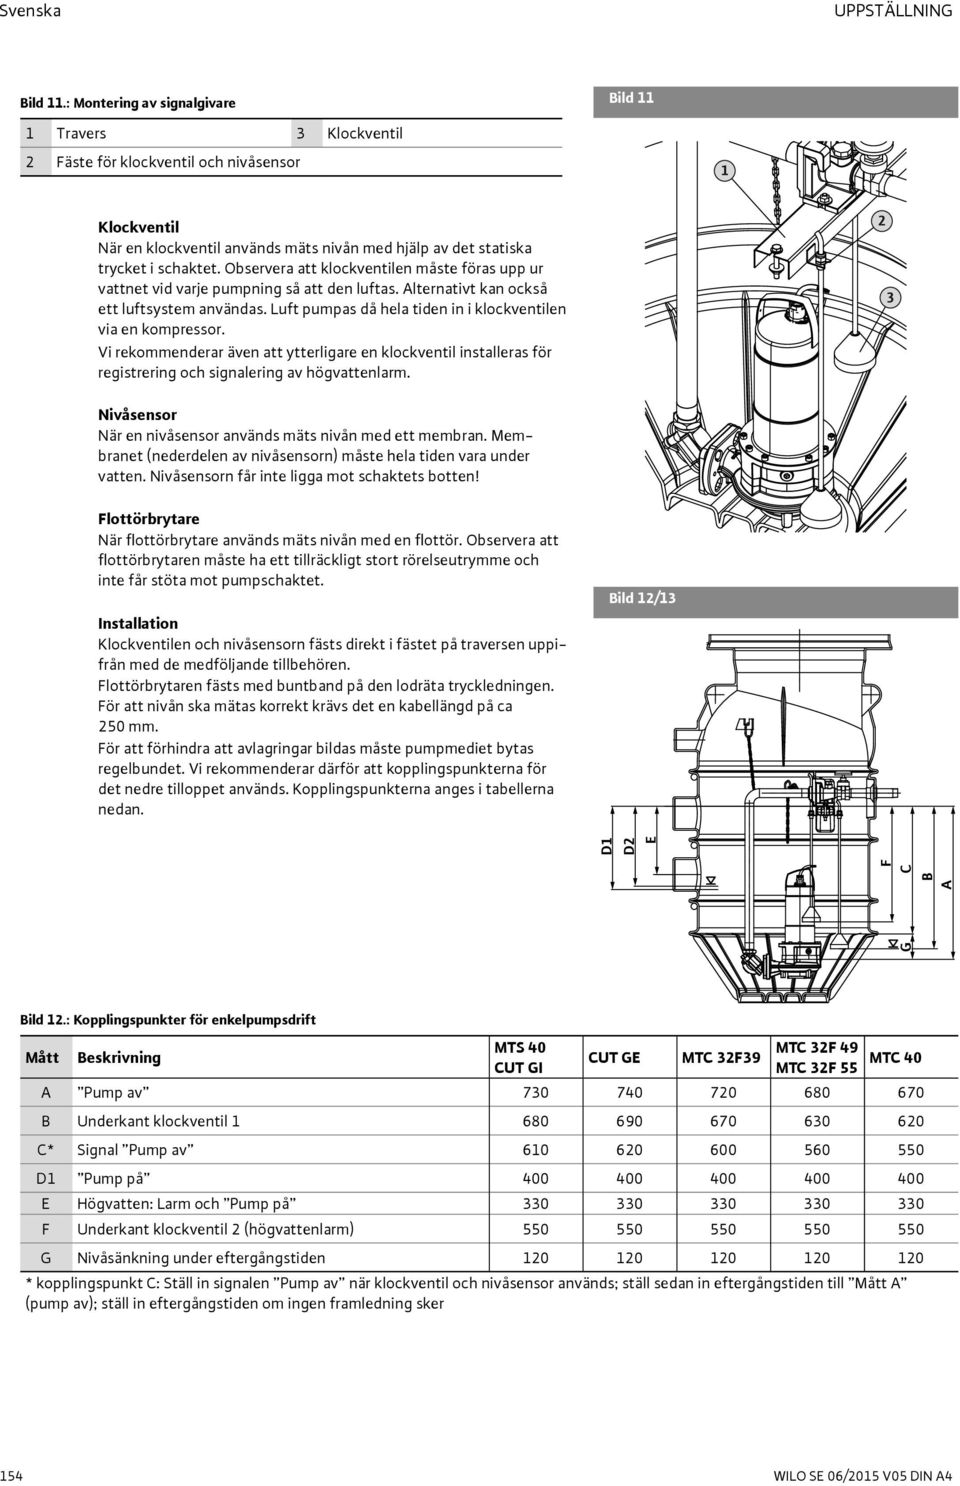 Observera att klockventilen måste föras upp ur vattnet vid varje pumpning så att den luftas. Alternativt kan också ett luftsystem användas.